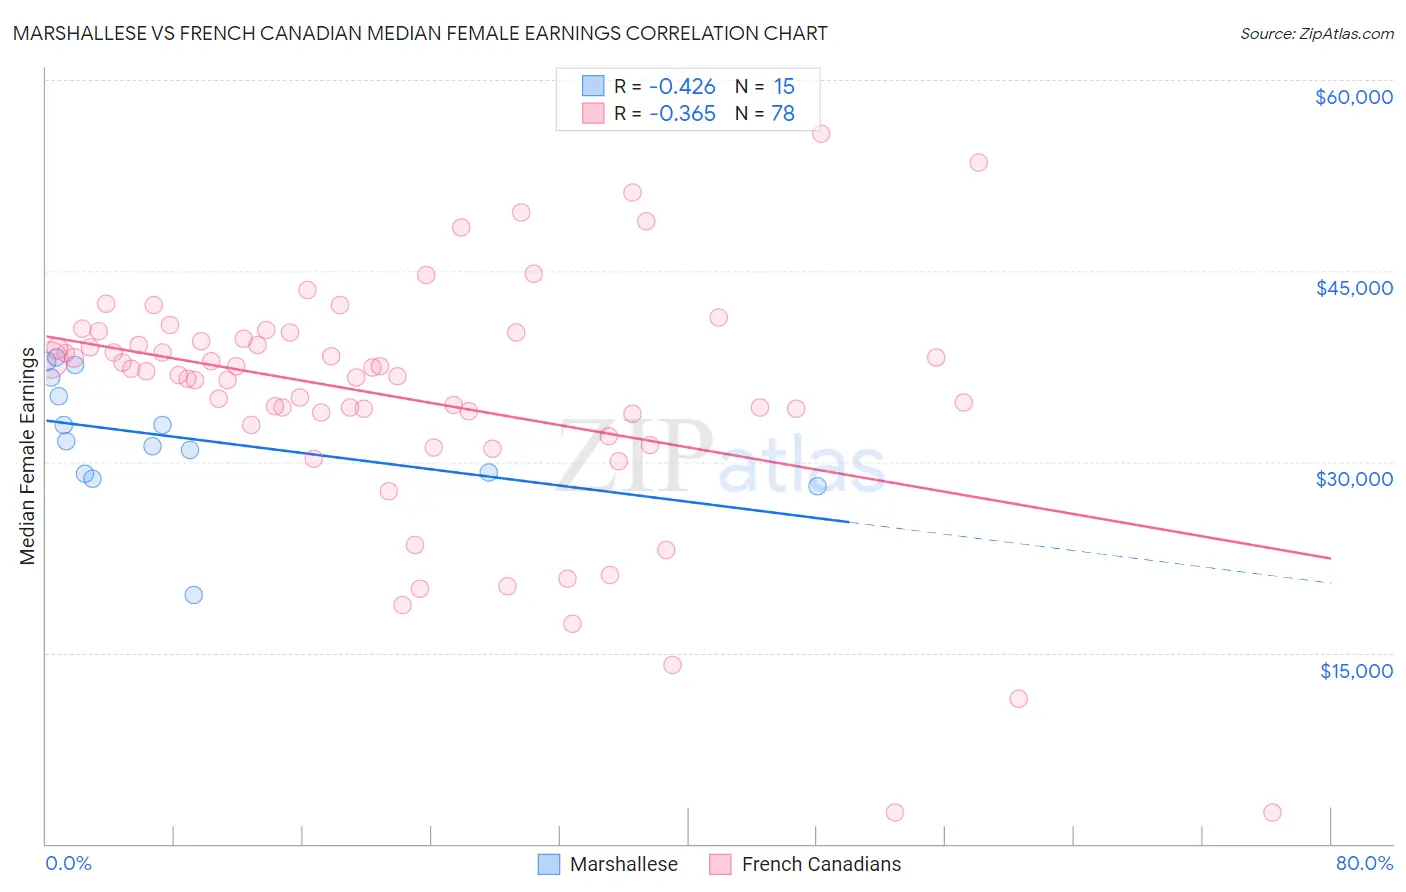 Marshallese vs French Canadian Median Female Earnings